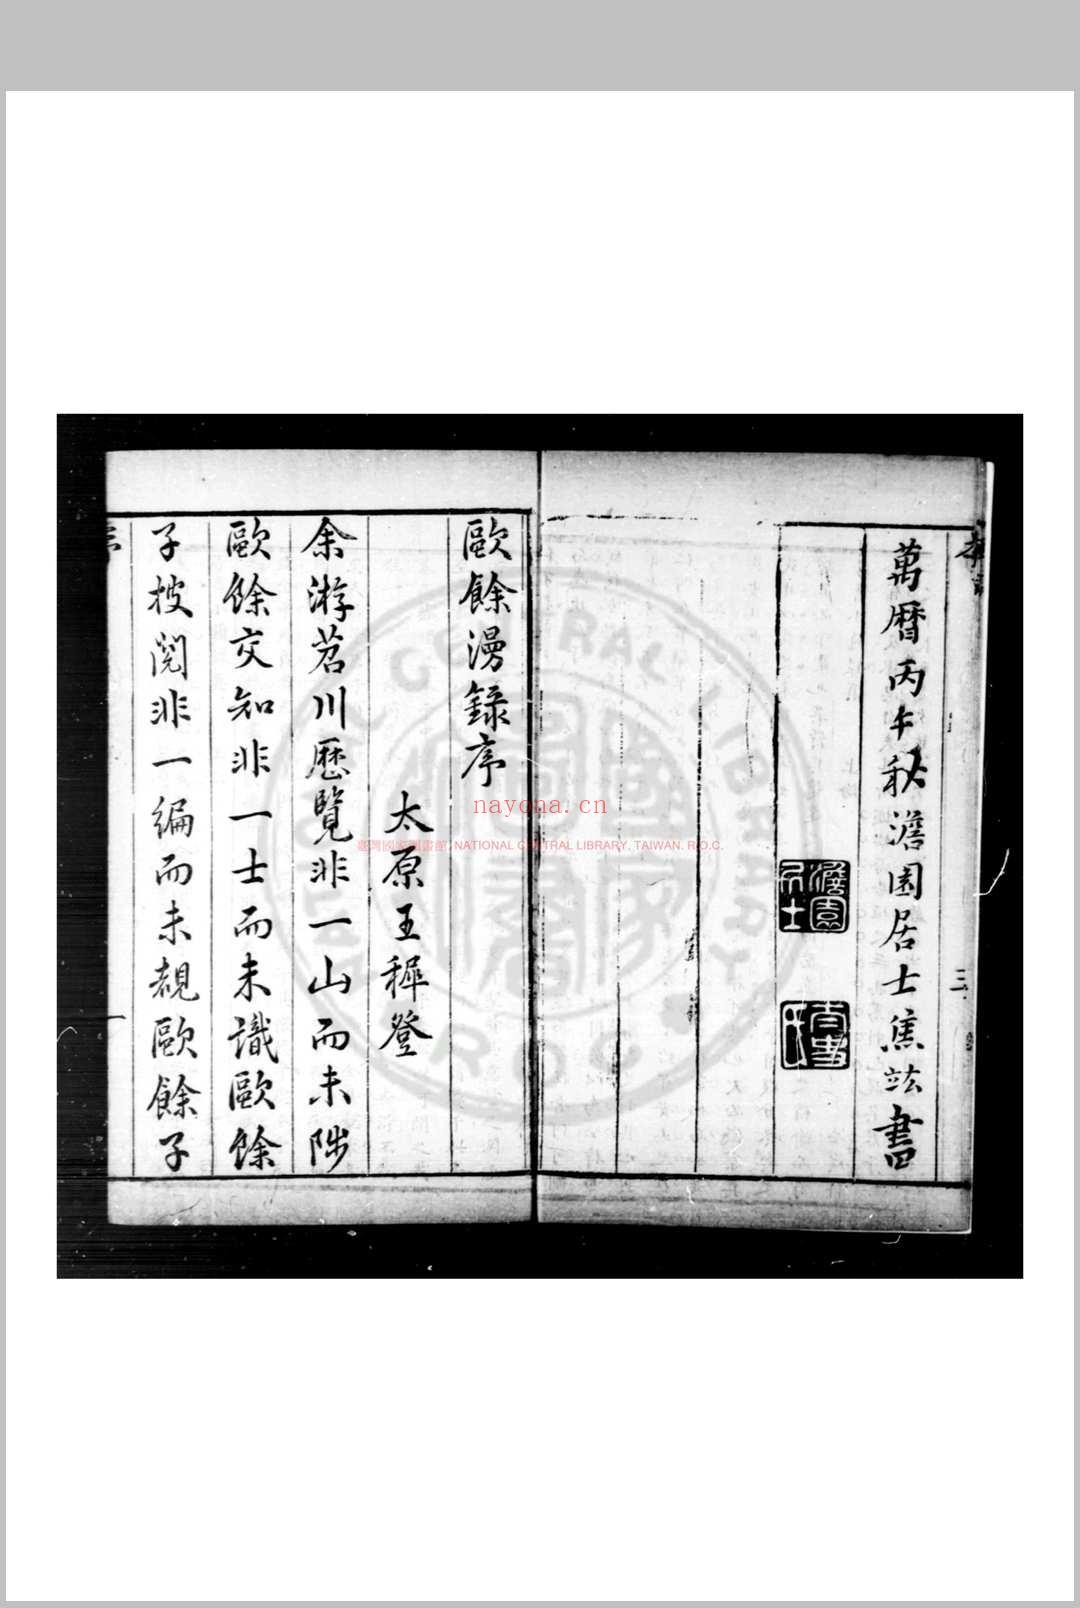 欧馀漫录 (明)闵元衢撰 明万历间(1573-1620)刊本